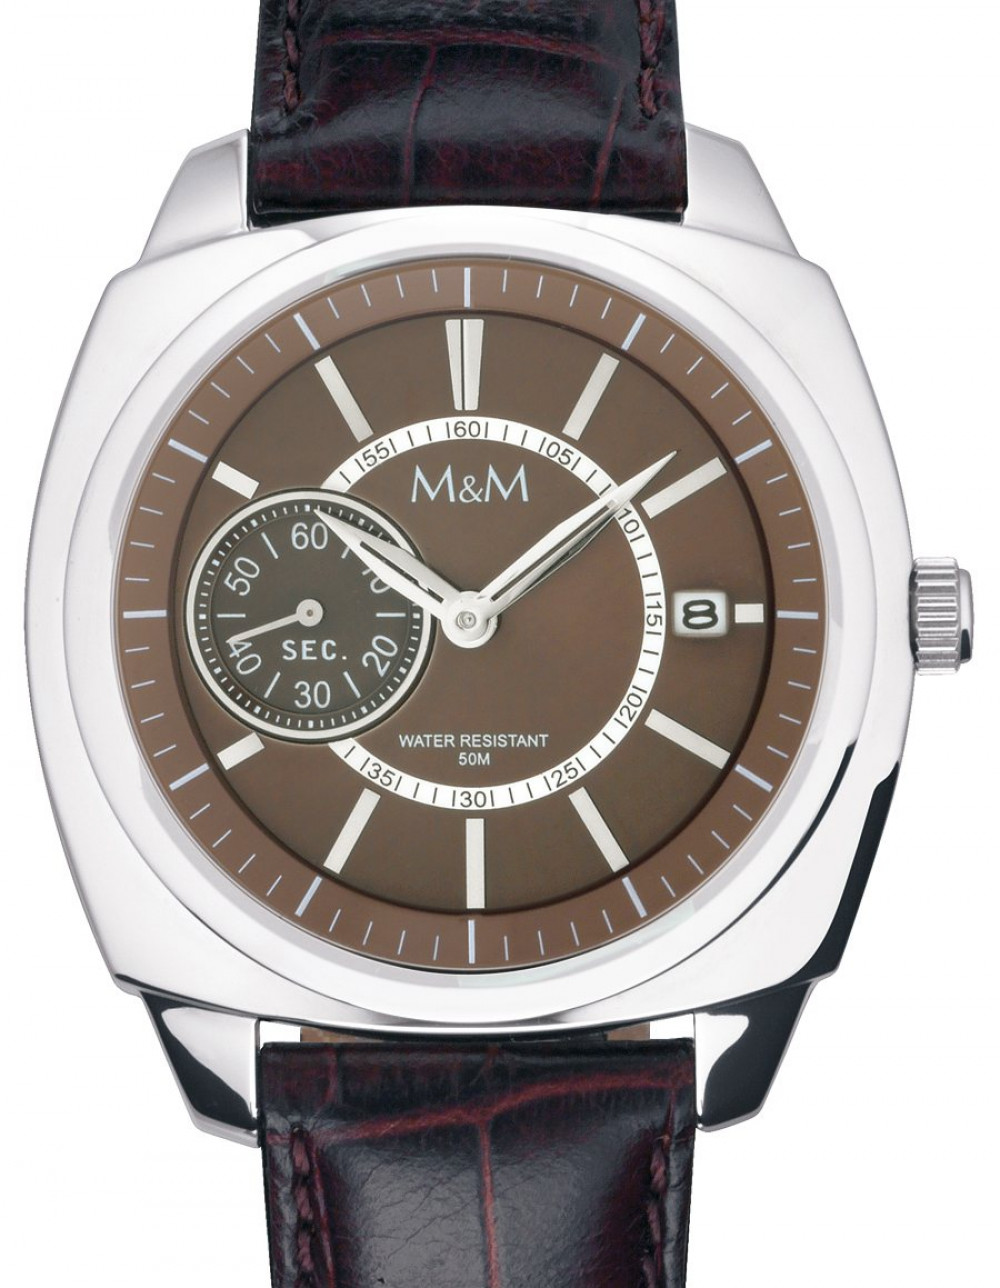 Zegarek firmy M&M Germany, model 